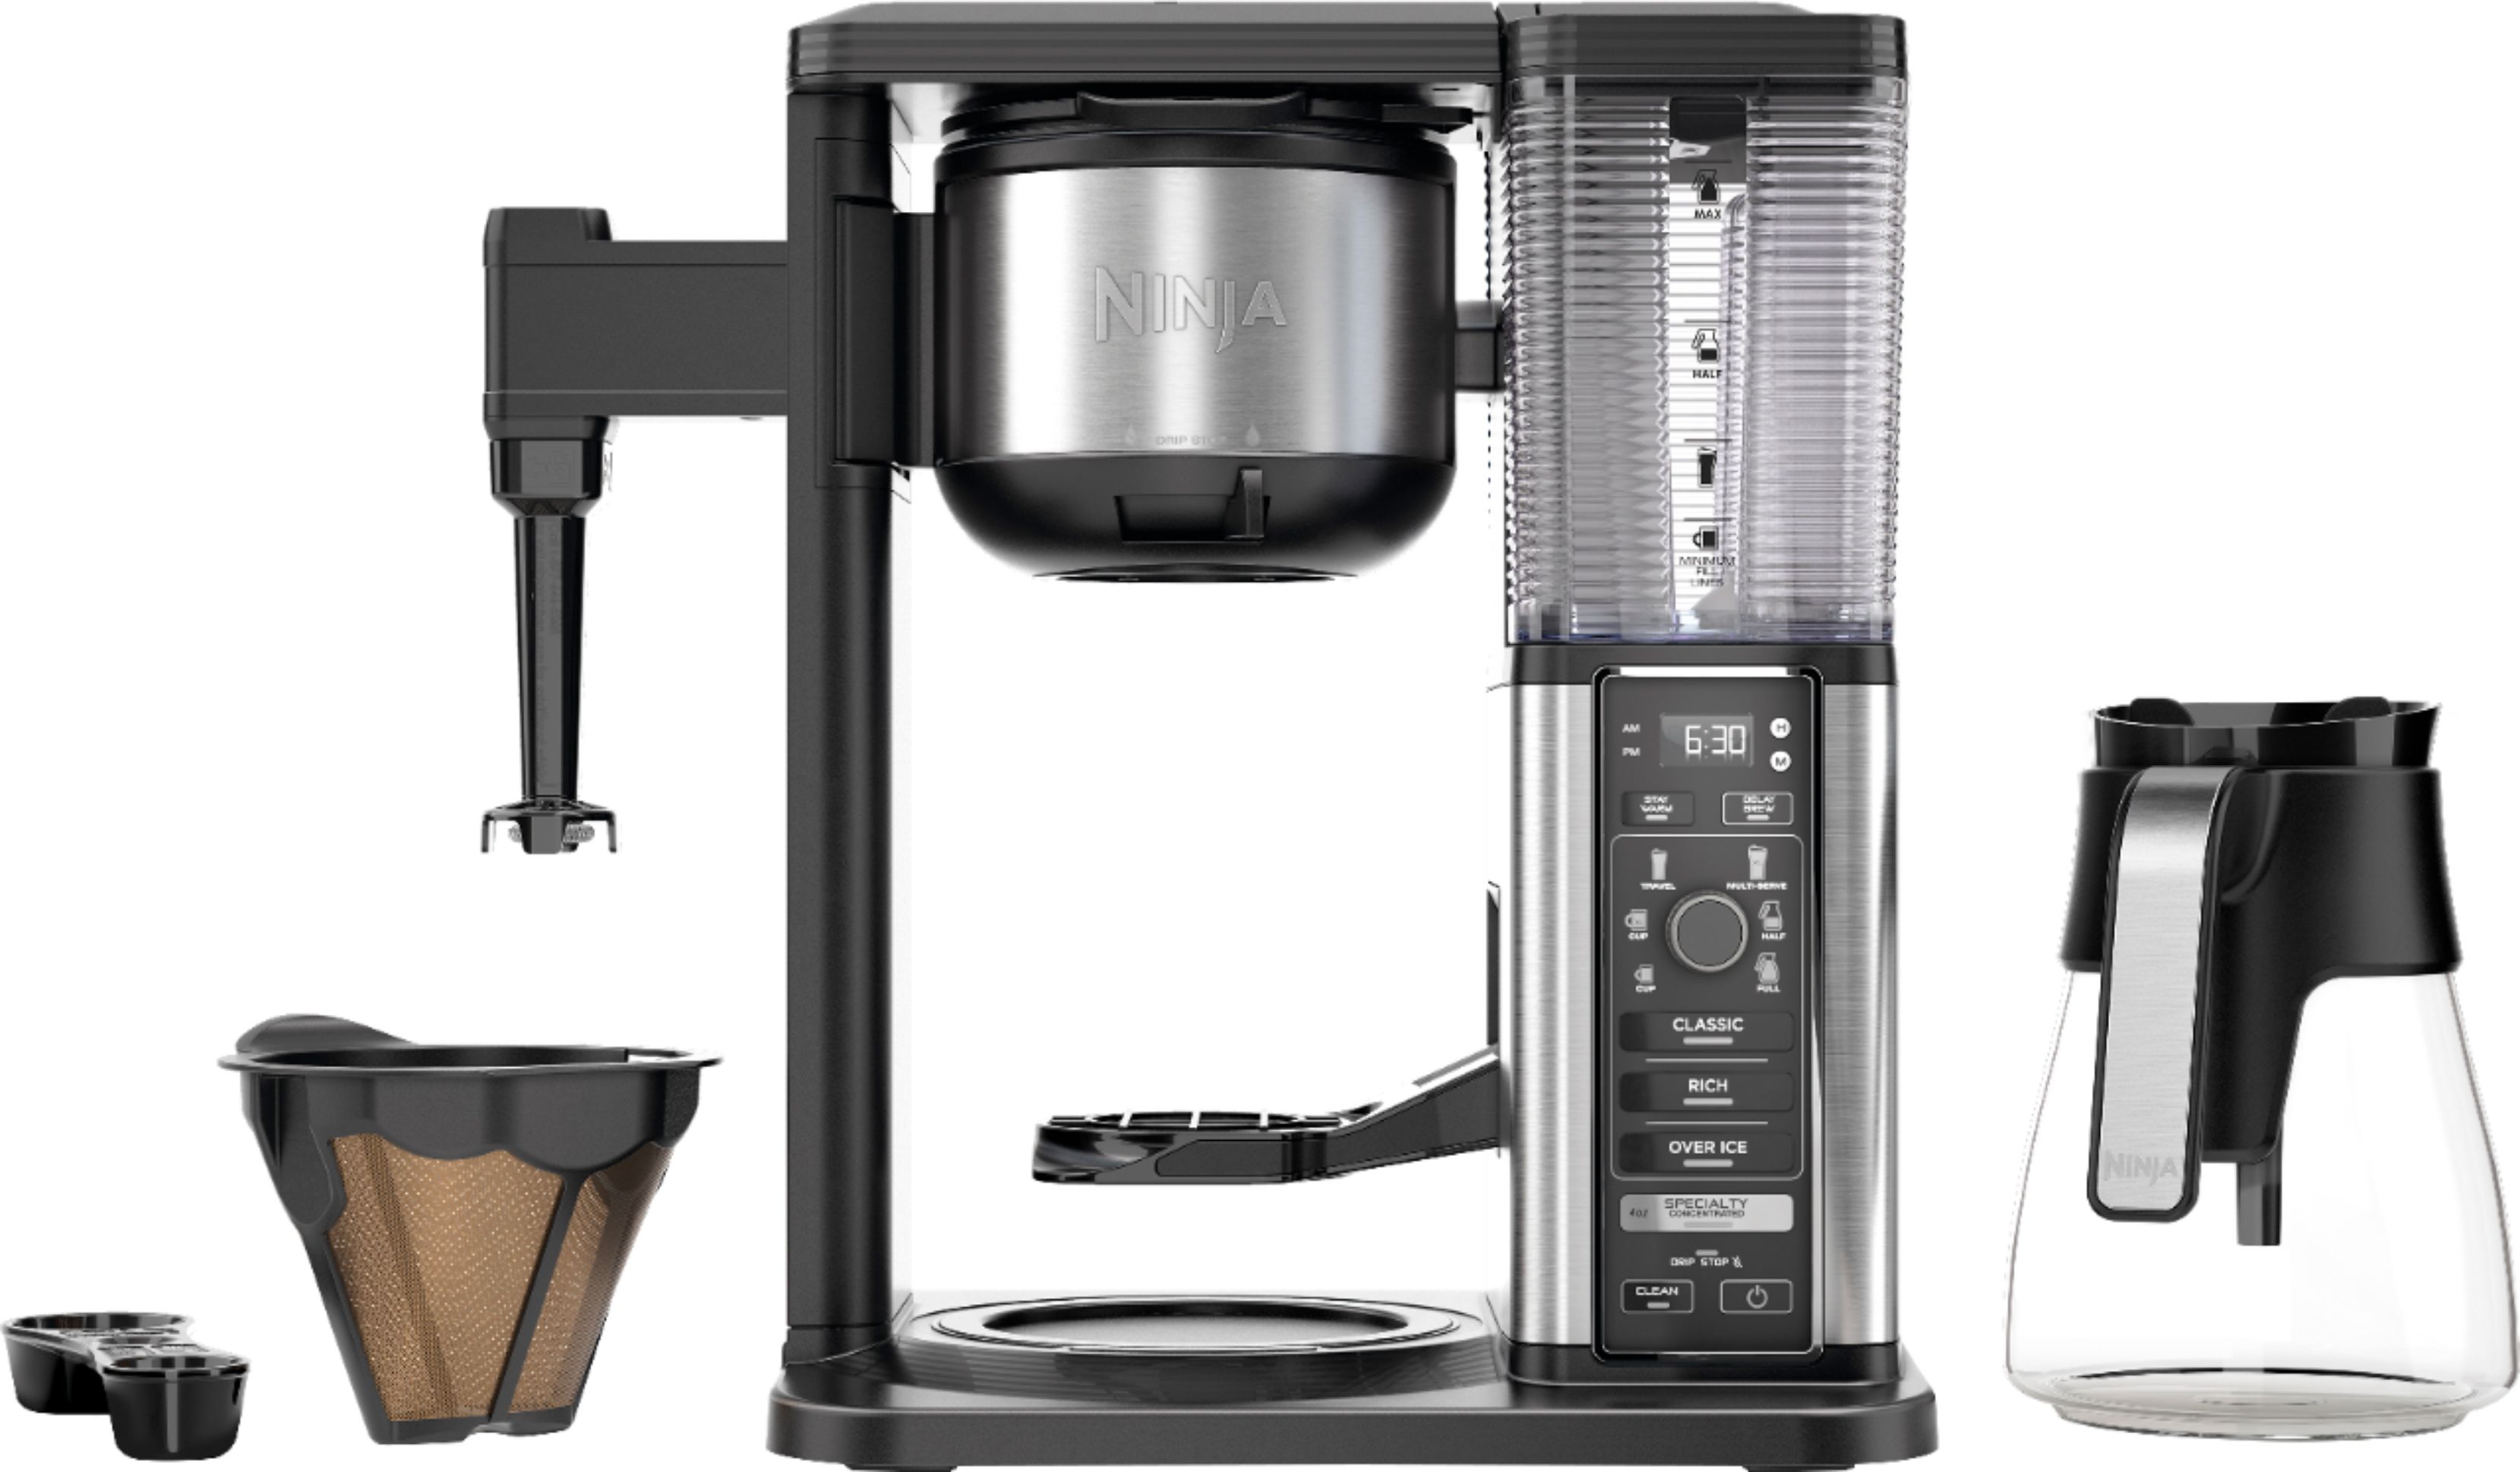 Ninja CM401 Specialty 10-Cup Coffee Maker, Black/Stainless Steel